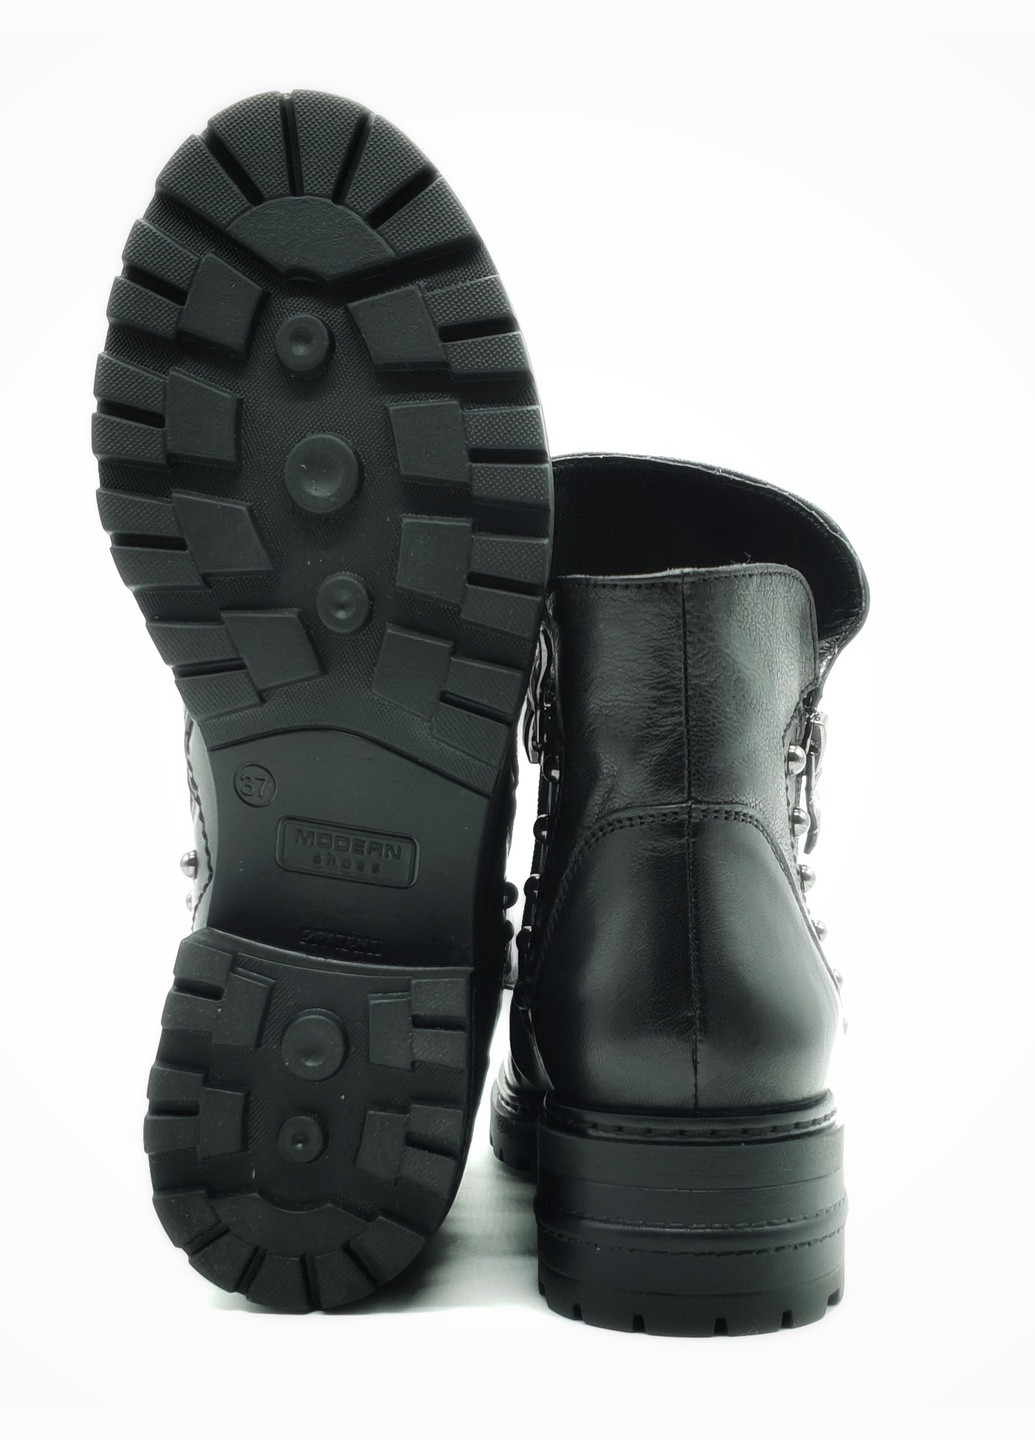 Осенние женские ботинки зимние черные кожаные p-19-1 24 см (р) patterns